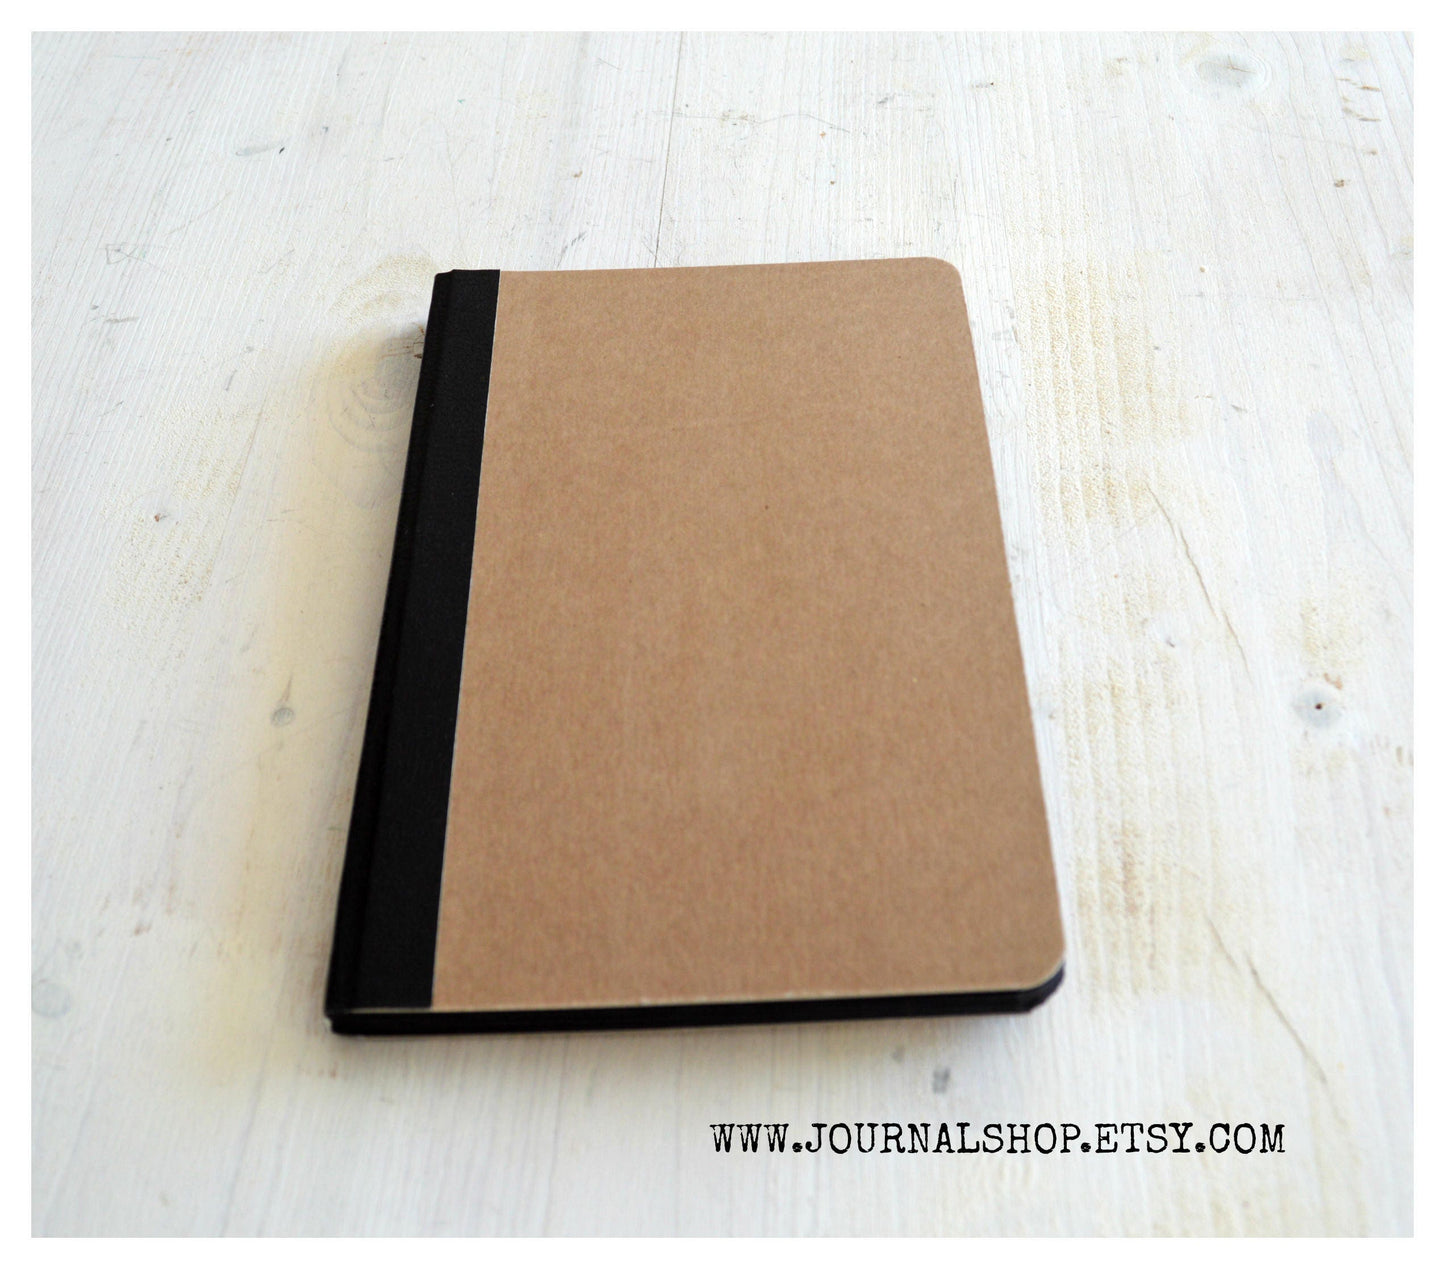 Handmade Hardcover Sketchbook / Journal - Black, 40 Pages